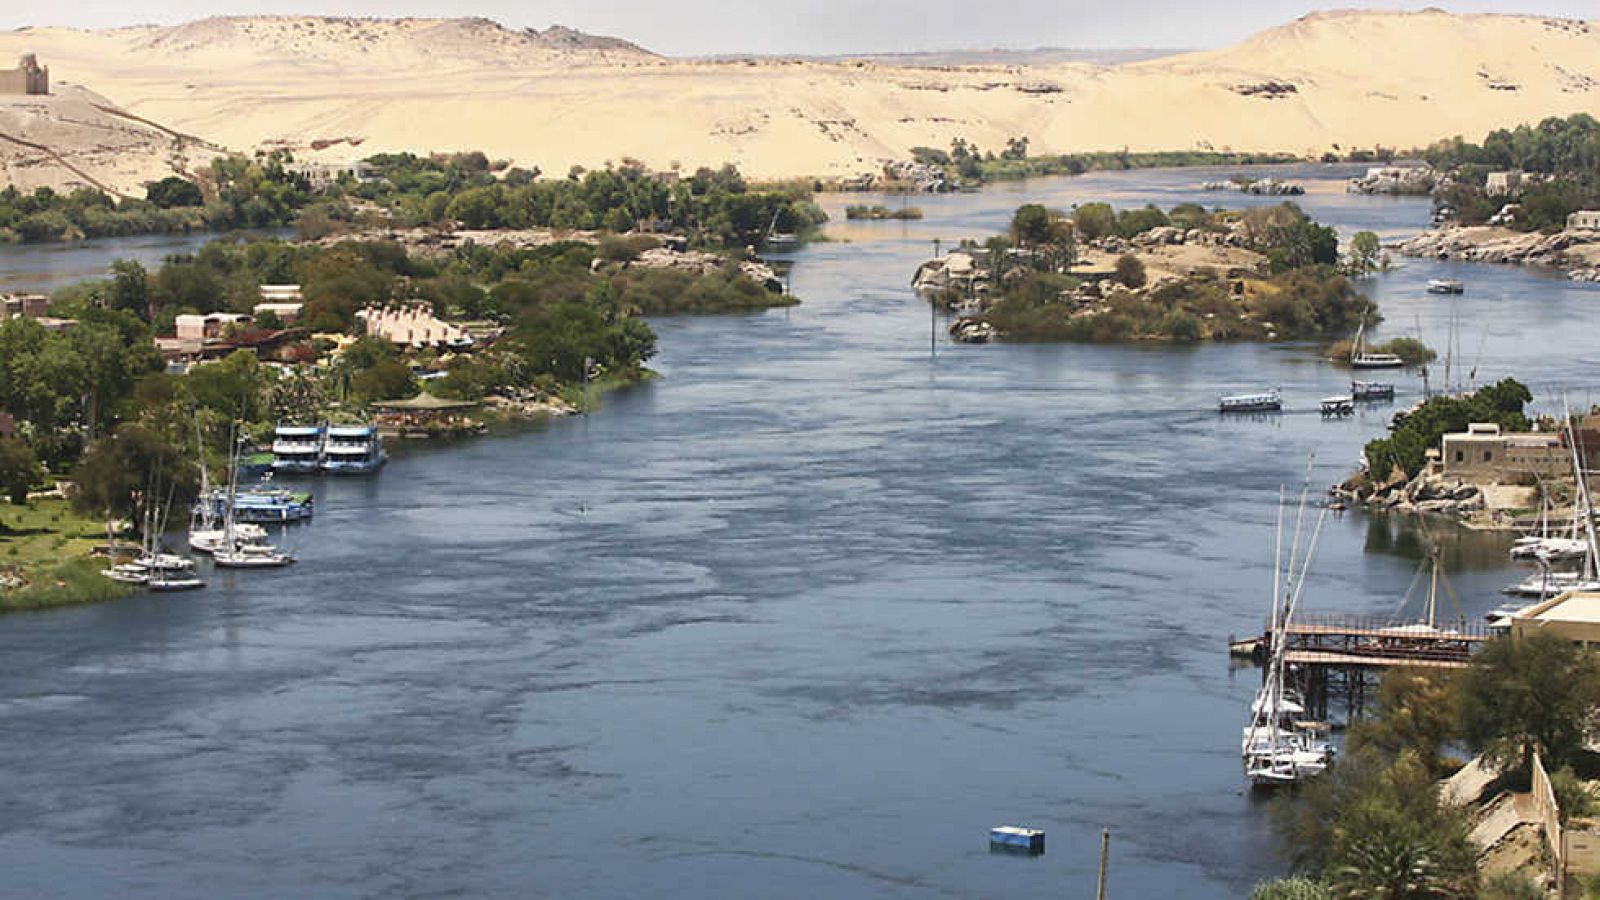 El documental - Un mundo aparte: Siguiendo la estela del Nilo